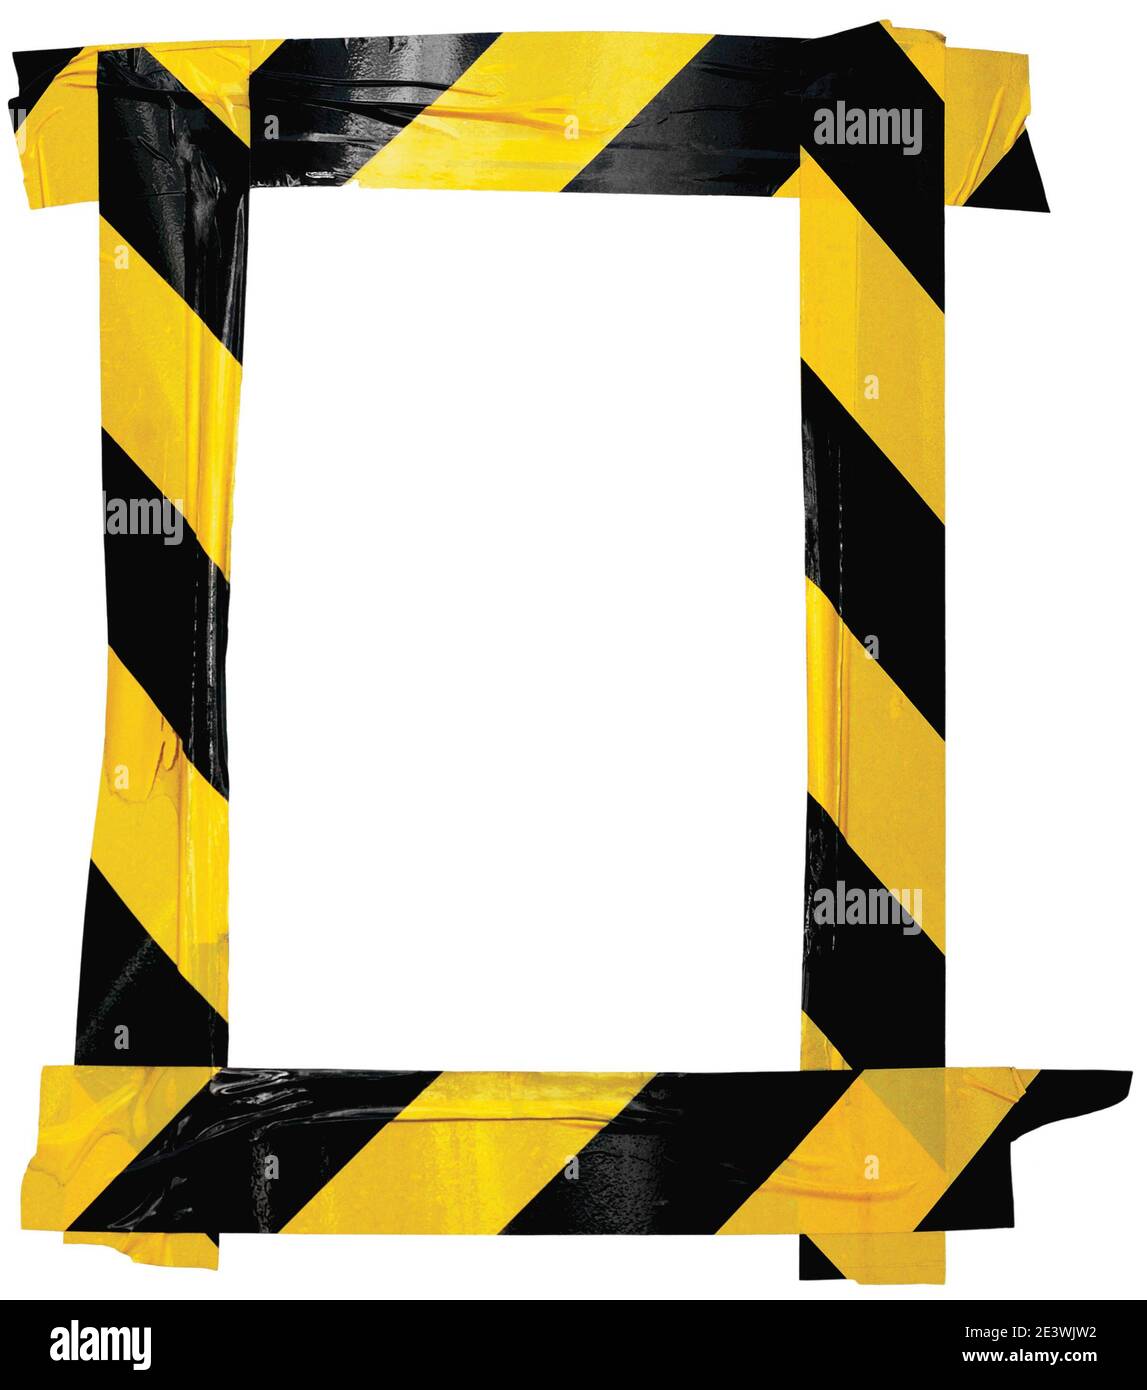 Ruban adhésif jaune noir pour avertissement de barricade pour avertissement cadre d'affiche, autocollant vertical arrière-plan, bandes diagonales pour danger signalisation attention à la sécurité Banque D'Images